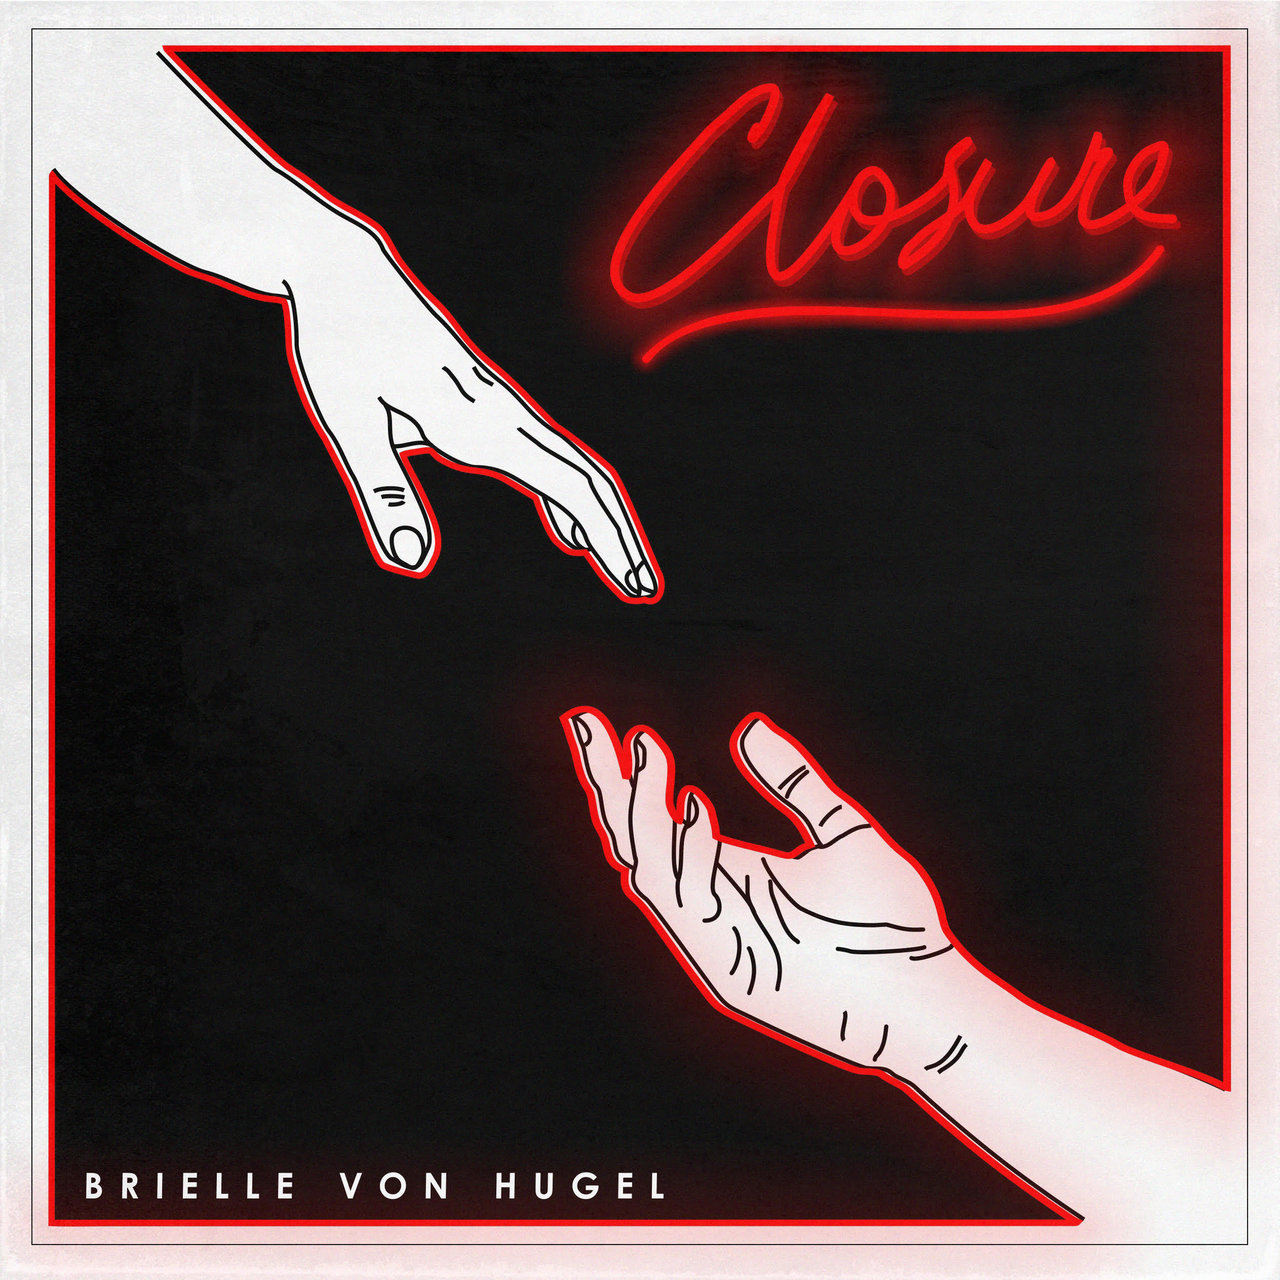 Brielle Von Hugel Closure cover artwork